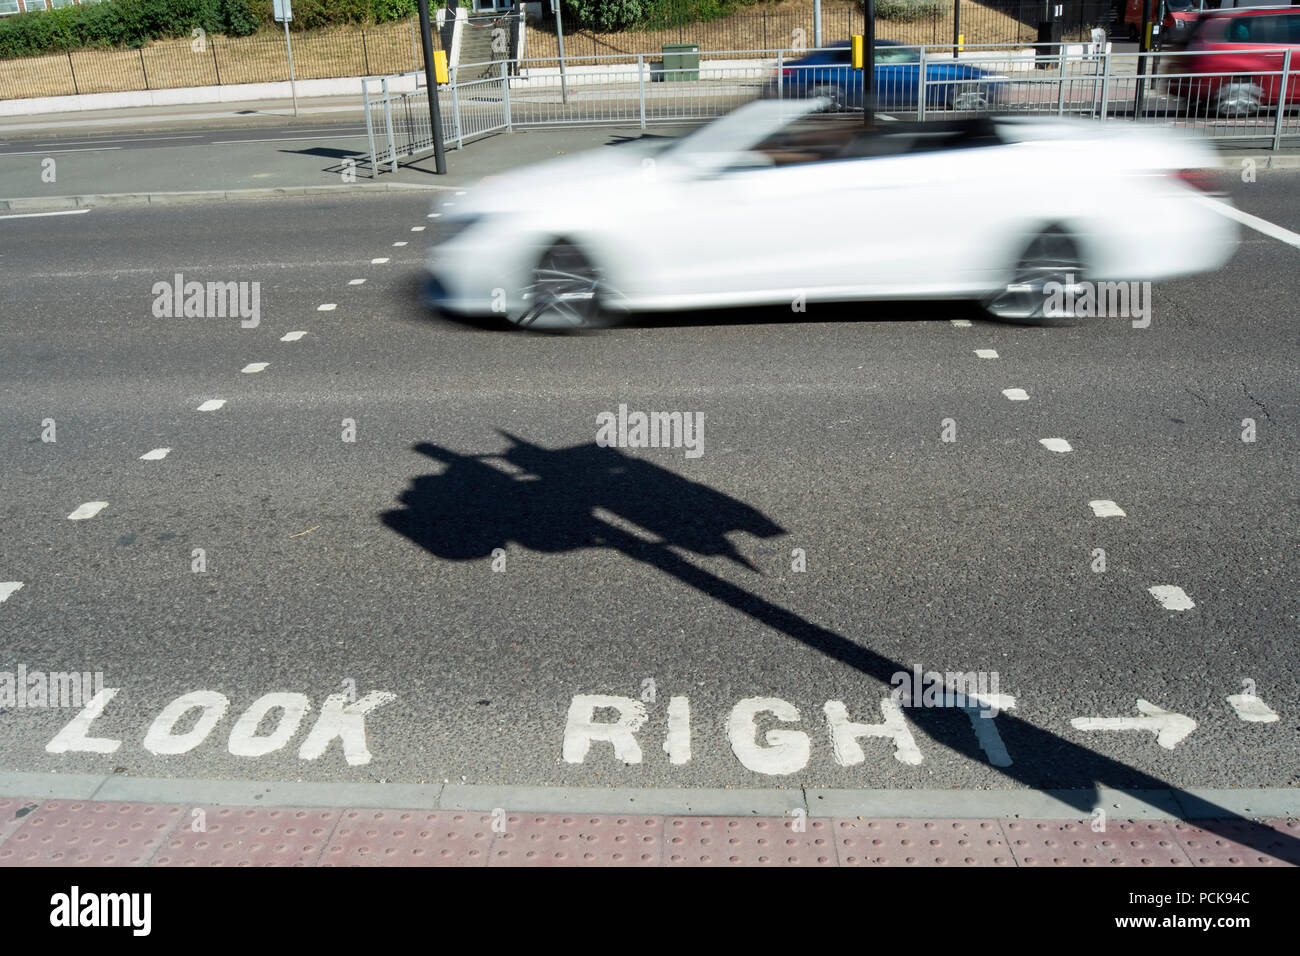 Der Schatten der Ampel, der quer durch einen Blick nach rechts weg kennzeichnen als ein weißes Auto geht, Isleworth, Middlesex, England Stockfoto